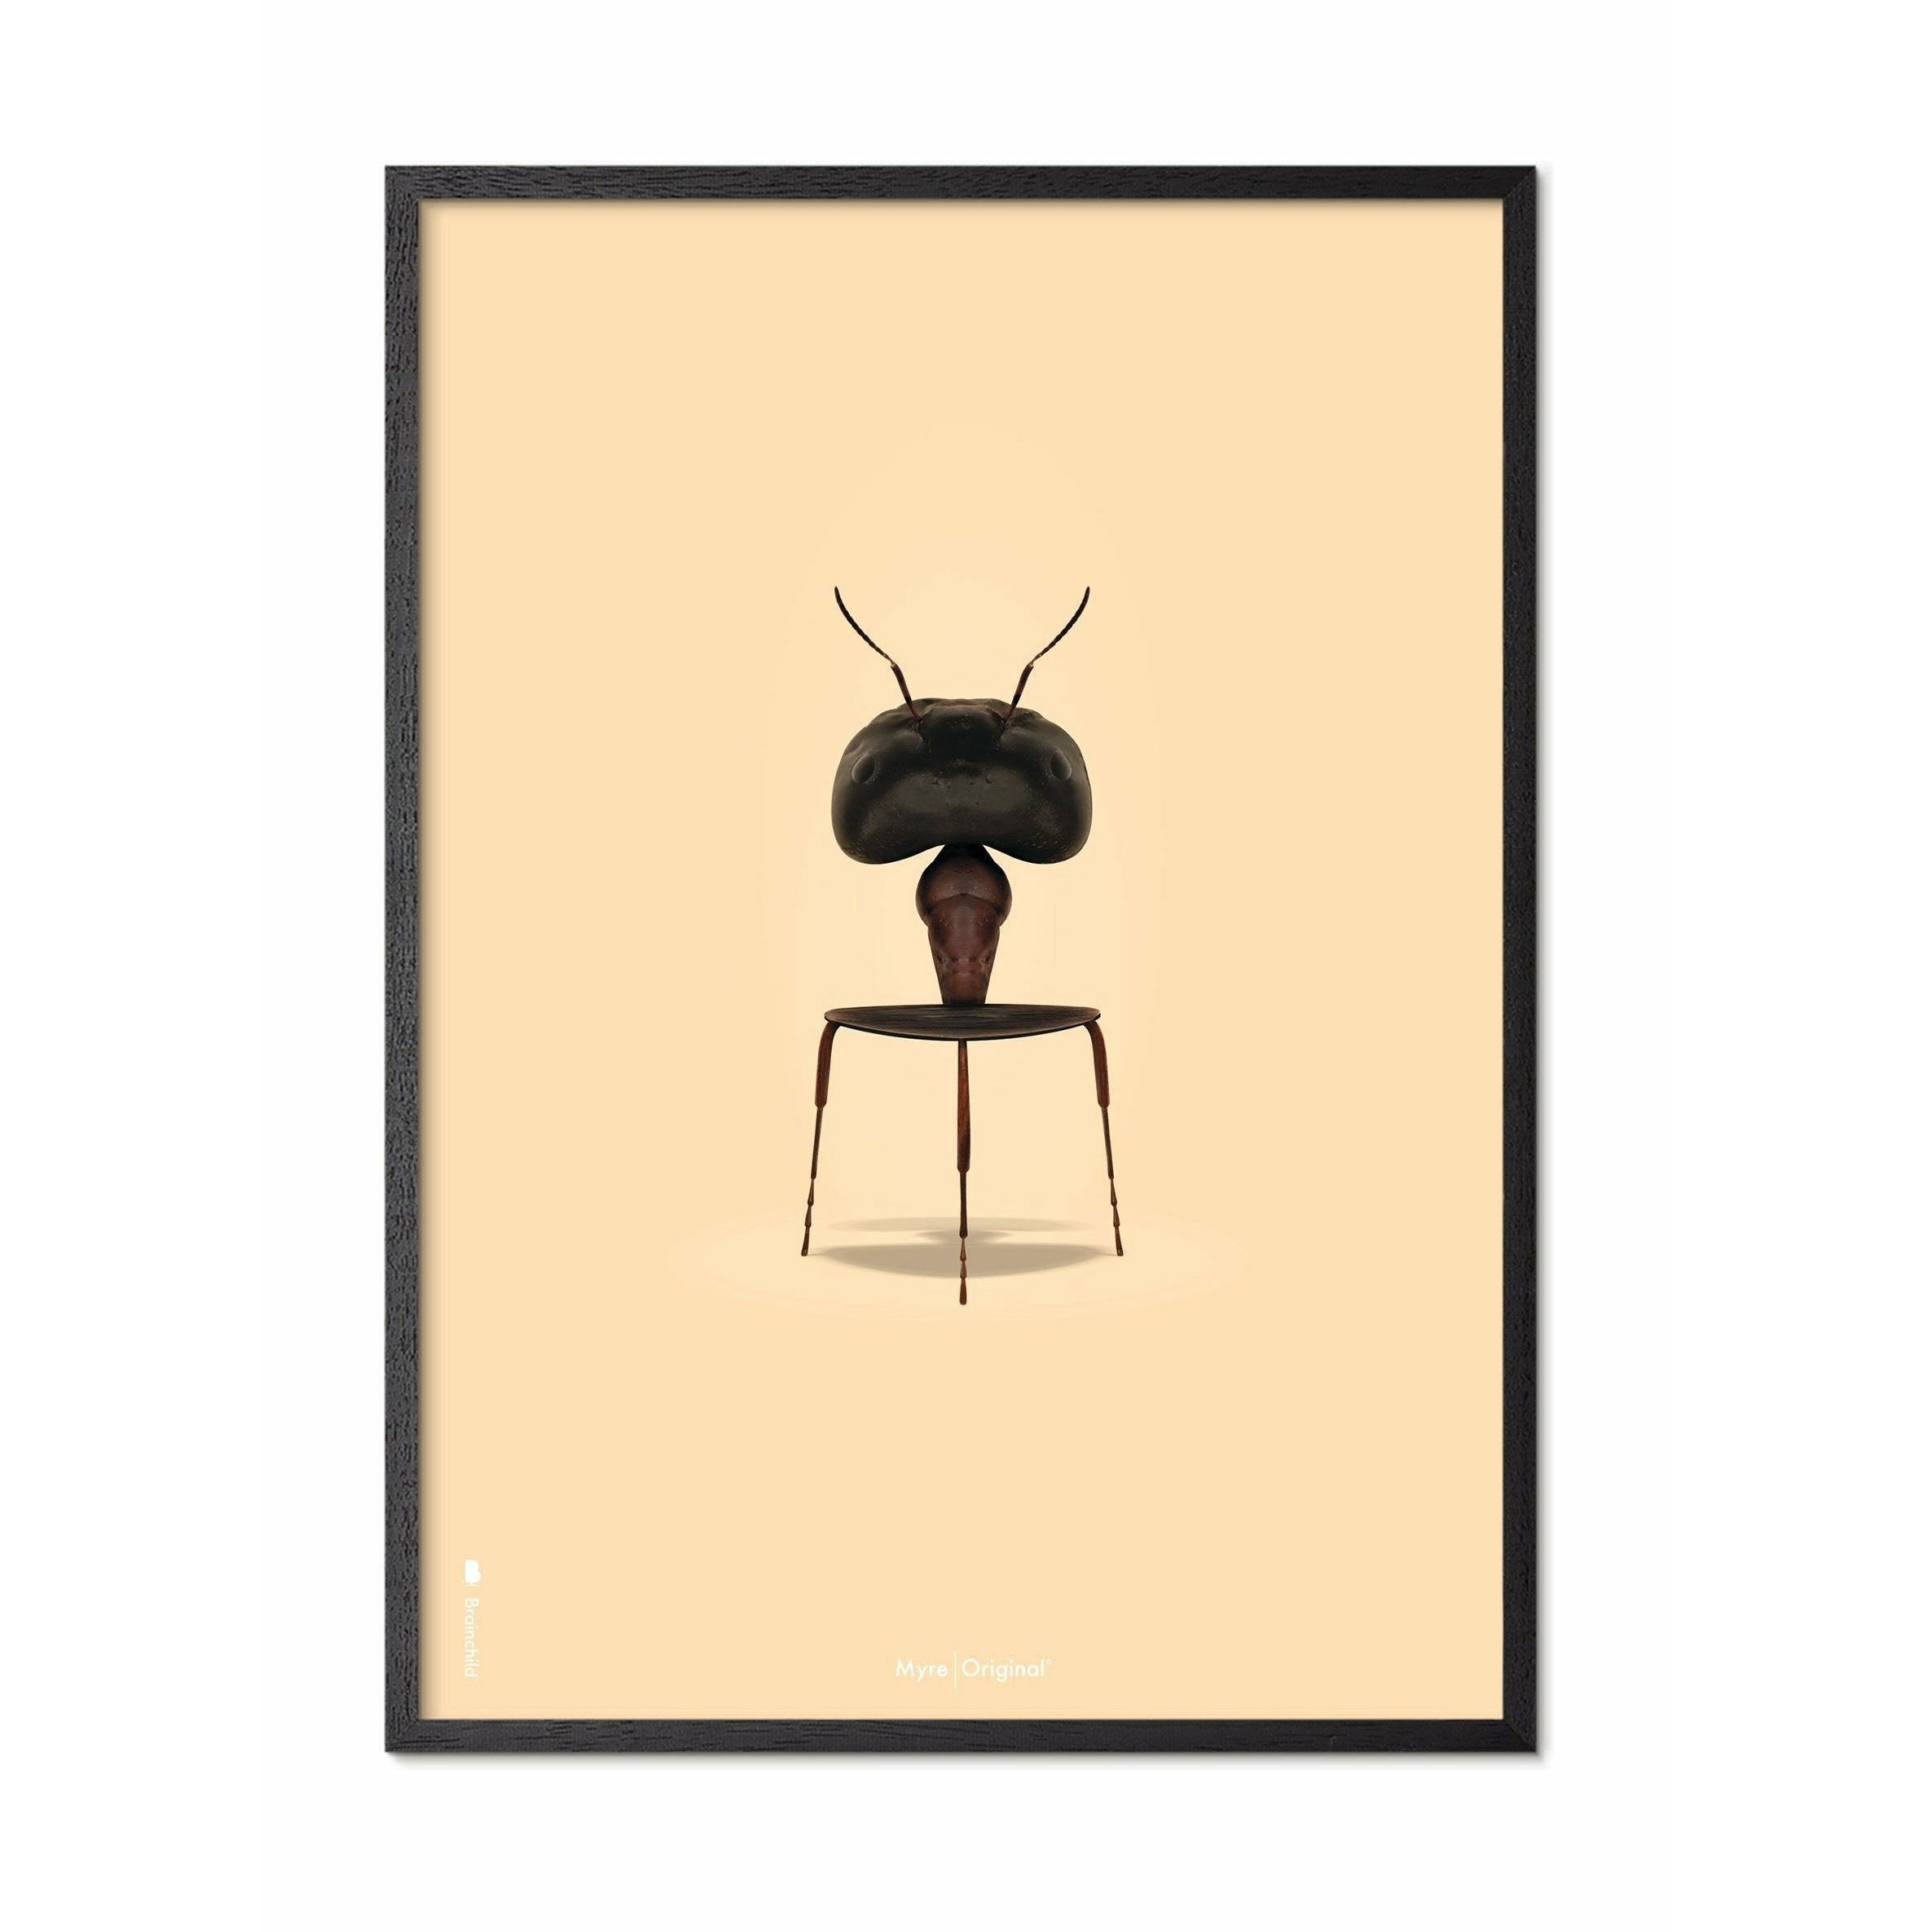 Brainchild Ant Classic plakát, rám v černém lakovaném dřevu 50x70 cm, pískově barevné pozadí